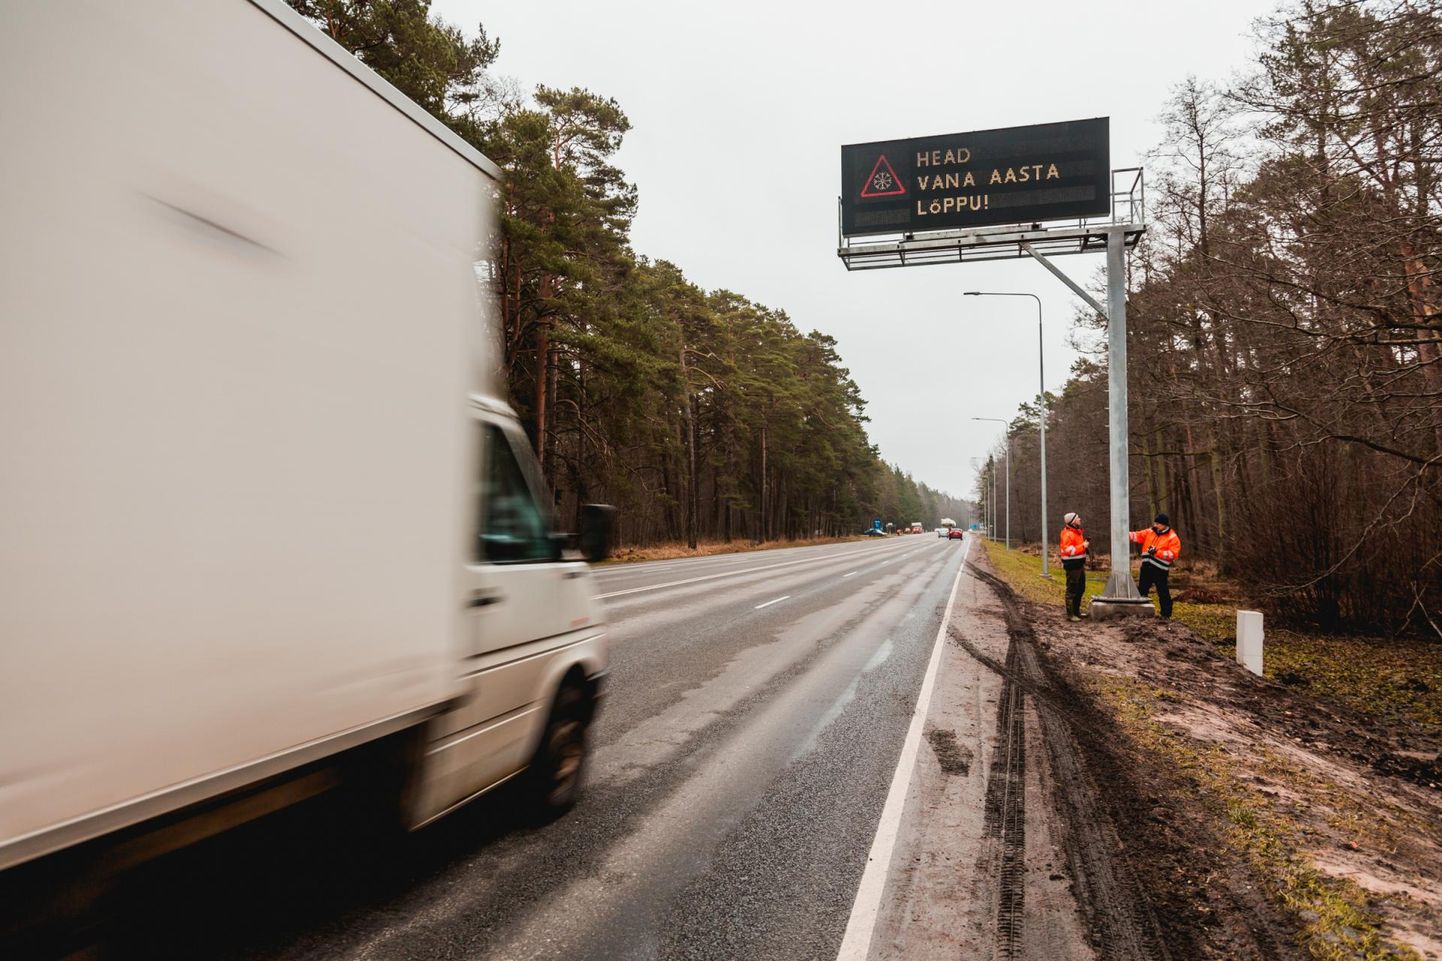 Tallinna–Pärnu maantee muutuva teabega liiklusmärkidel kuvatakse suursõraliste kõrgema liikumisaktiivsuse ja algava jahiperioodi tõttu hoiatust “Ulukite aktiivne liikumisperiood”.